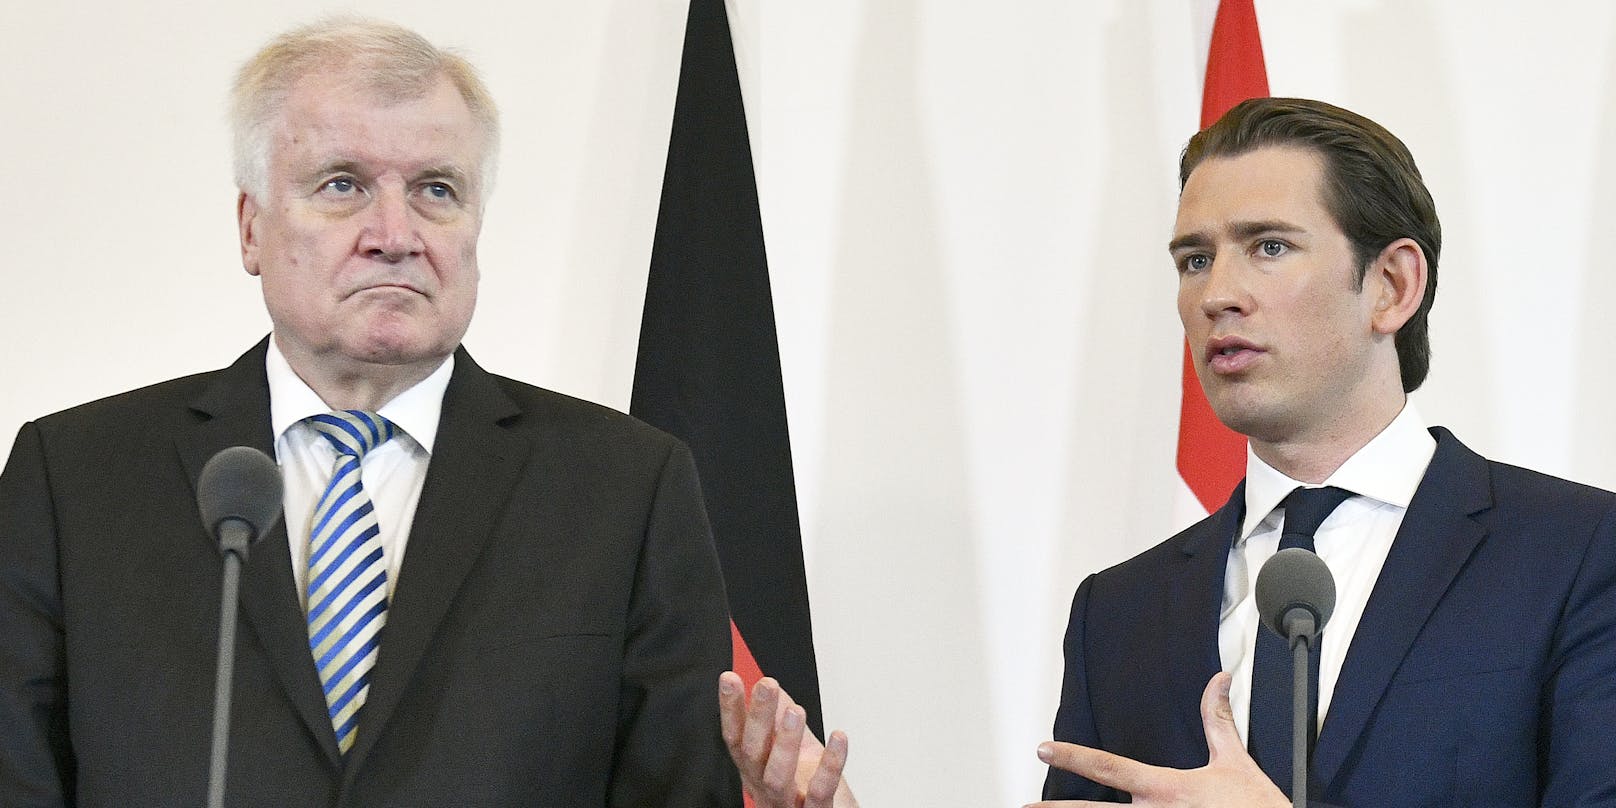 Deutschlands Innenminister Seehofer ist mit Kurz' Asylpolitik nicht einverstanden